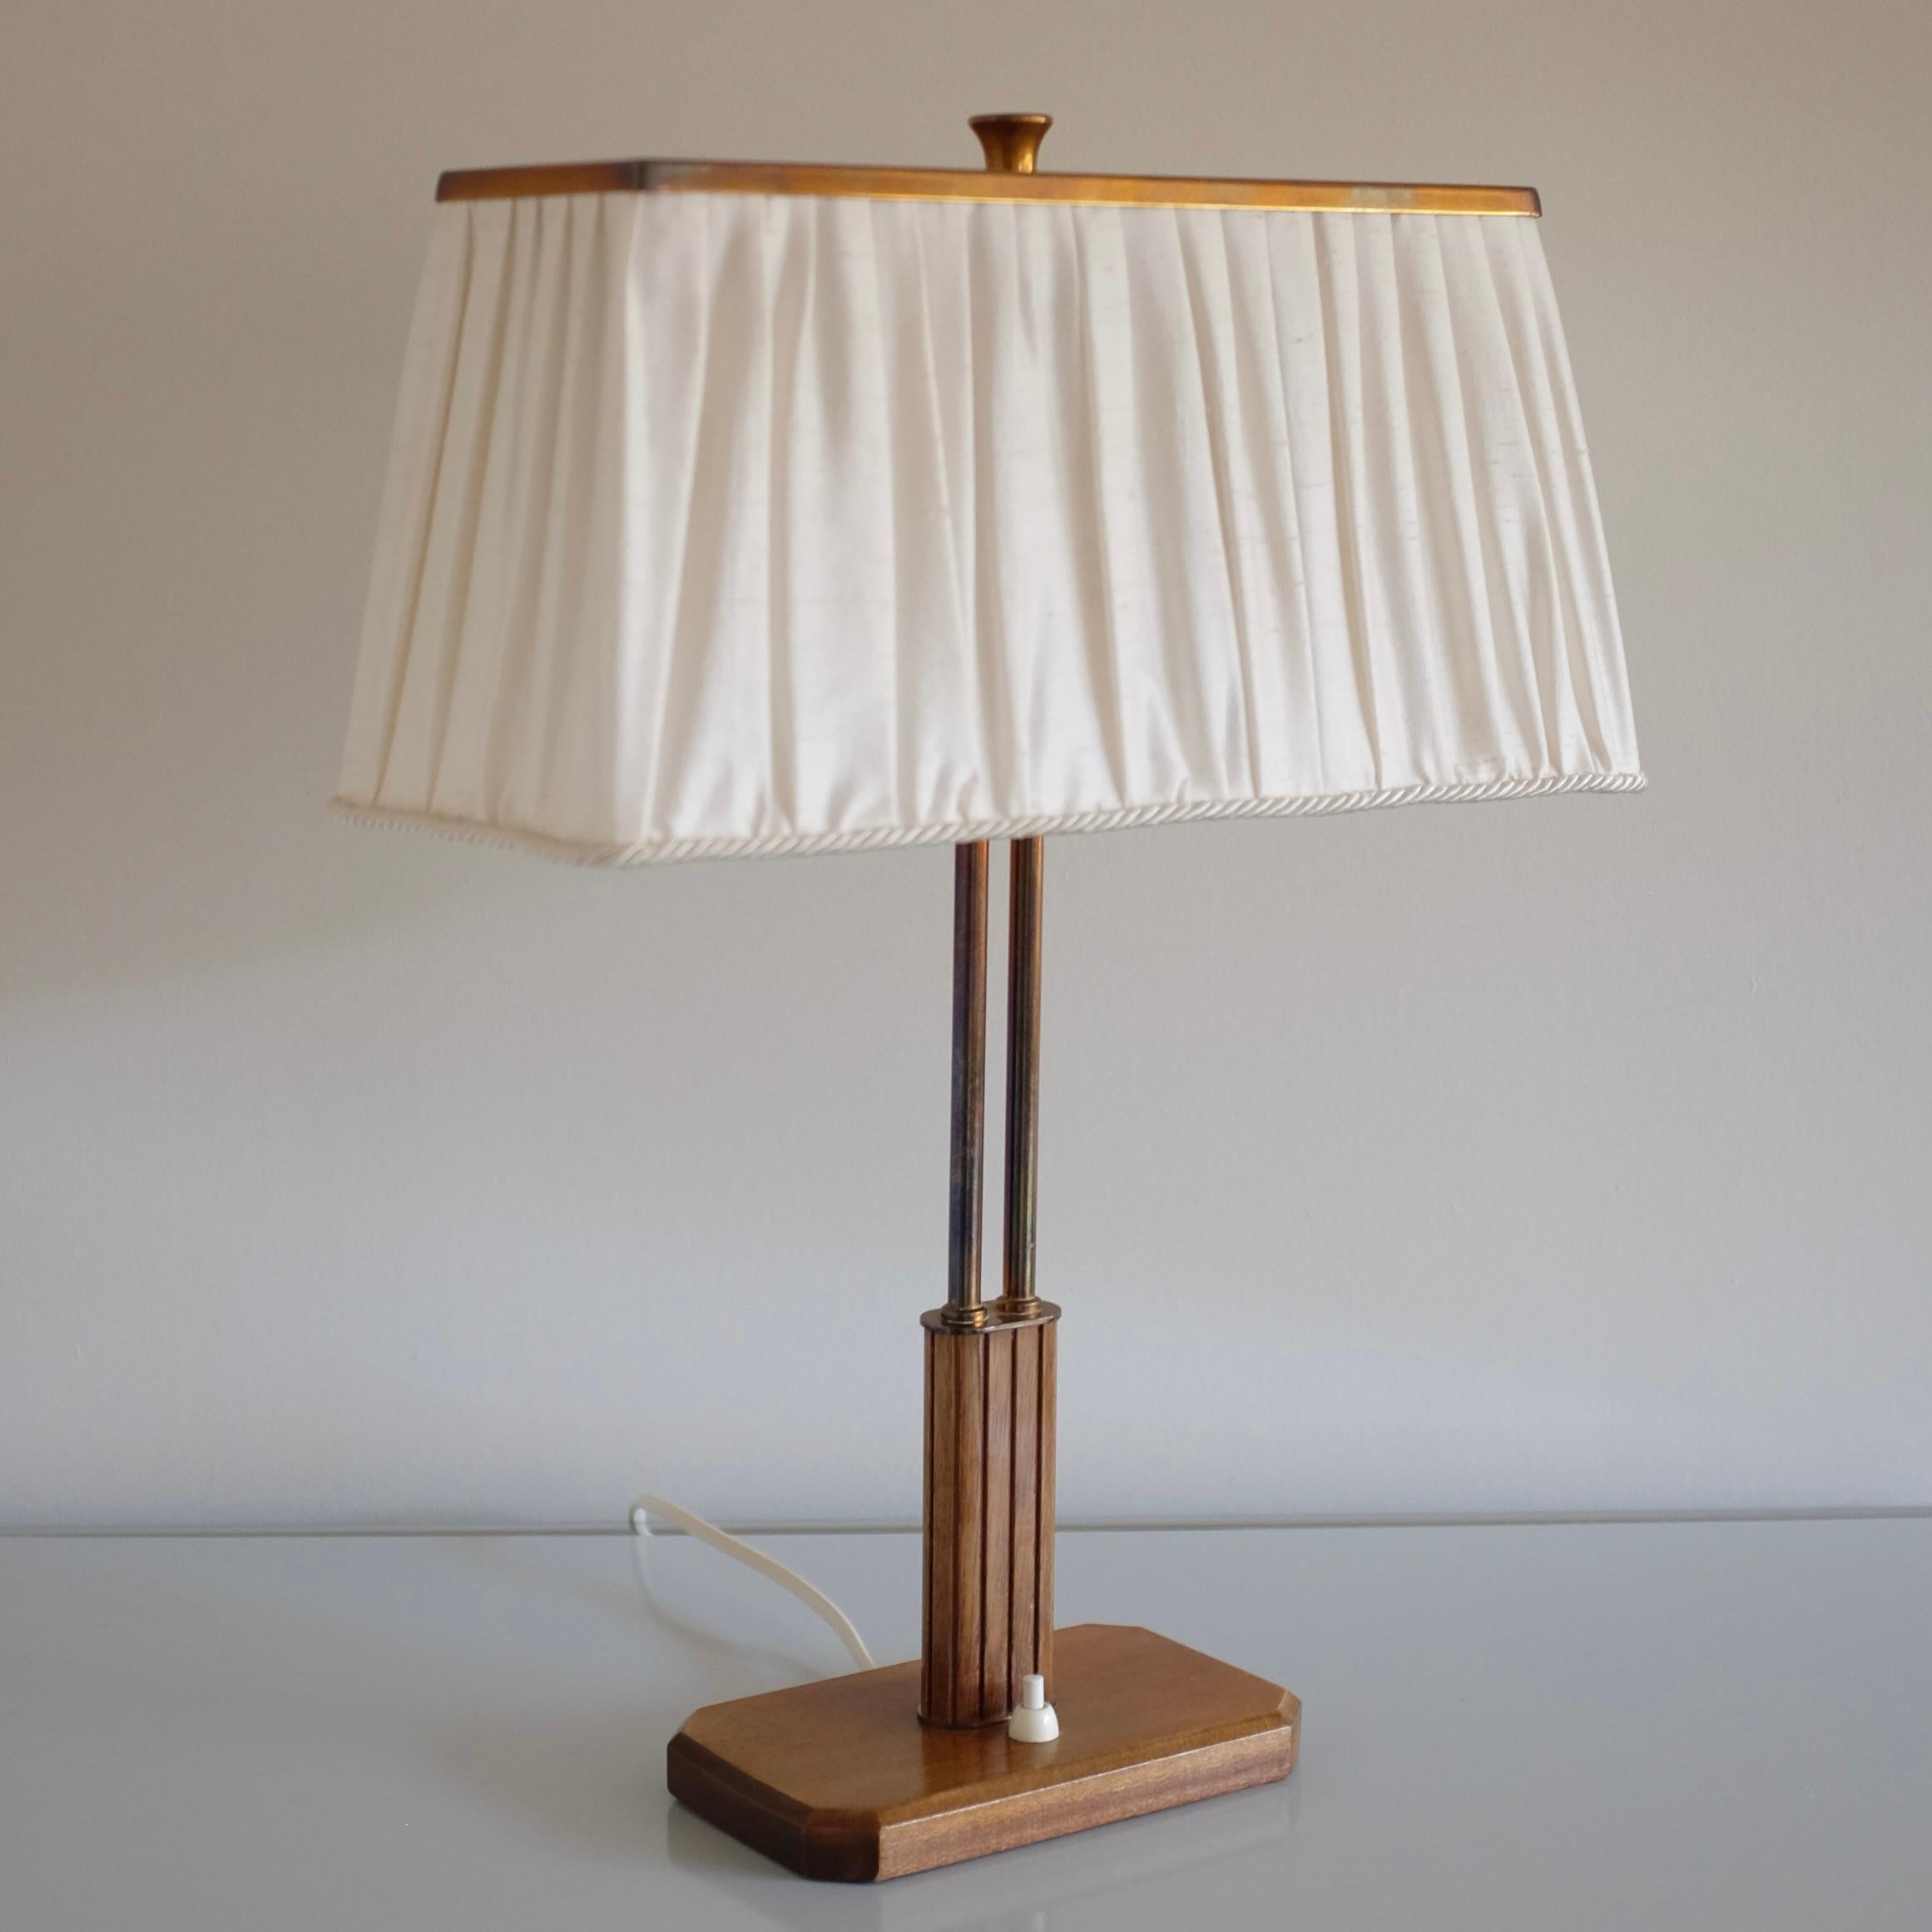 Schöne Tischlampe Modell 15485 aus den 1940er Jahren von Böhlmarks, Schweden, möglicherweise entworfen von Harald Notini. Lampenfuß aus Holz mit geschnitzten Details und Messing. 2 Lichter unter einem seidenen Lampenschirm mit Messingplatte und